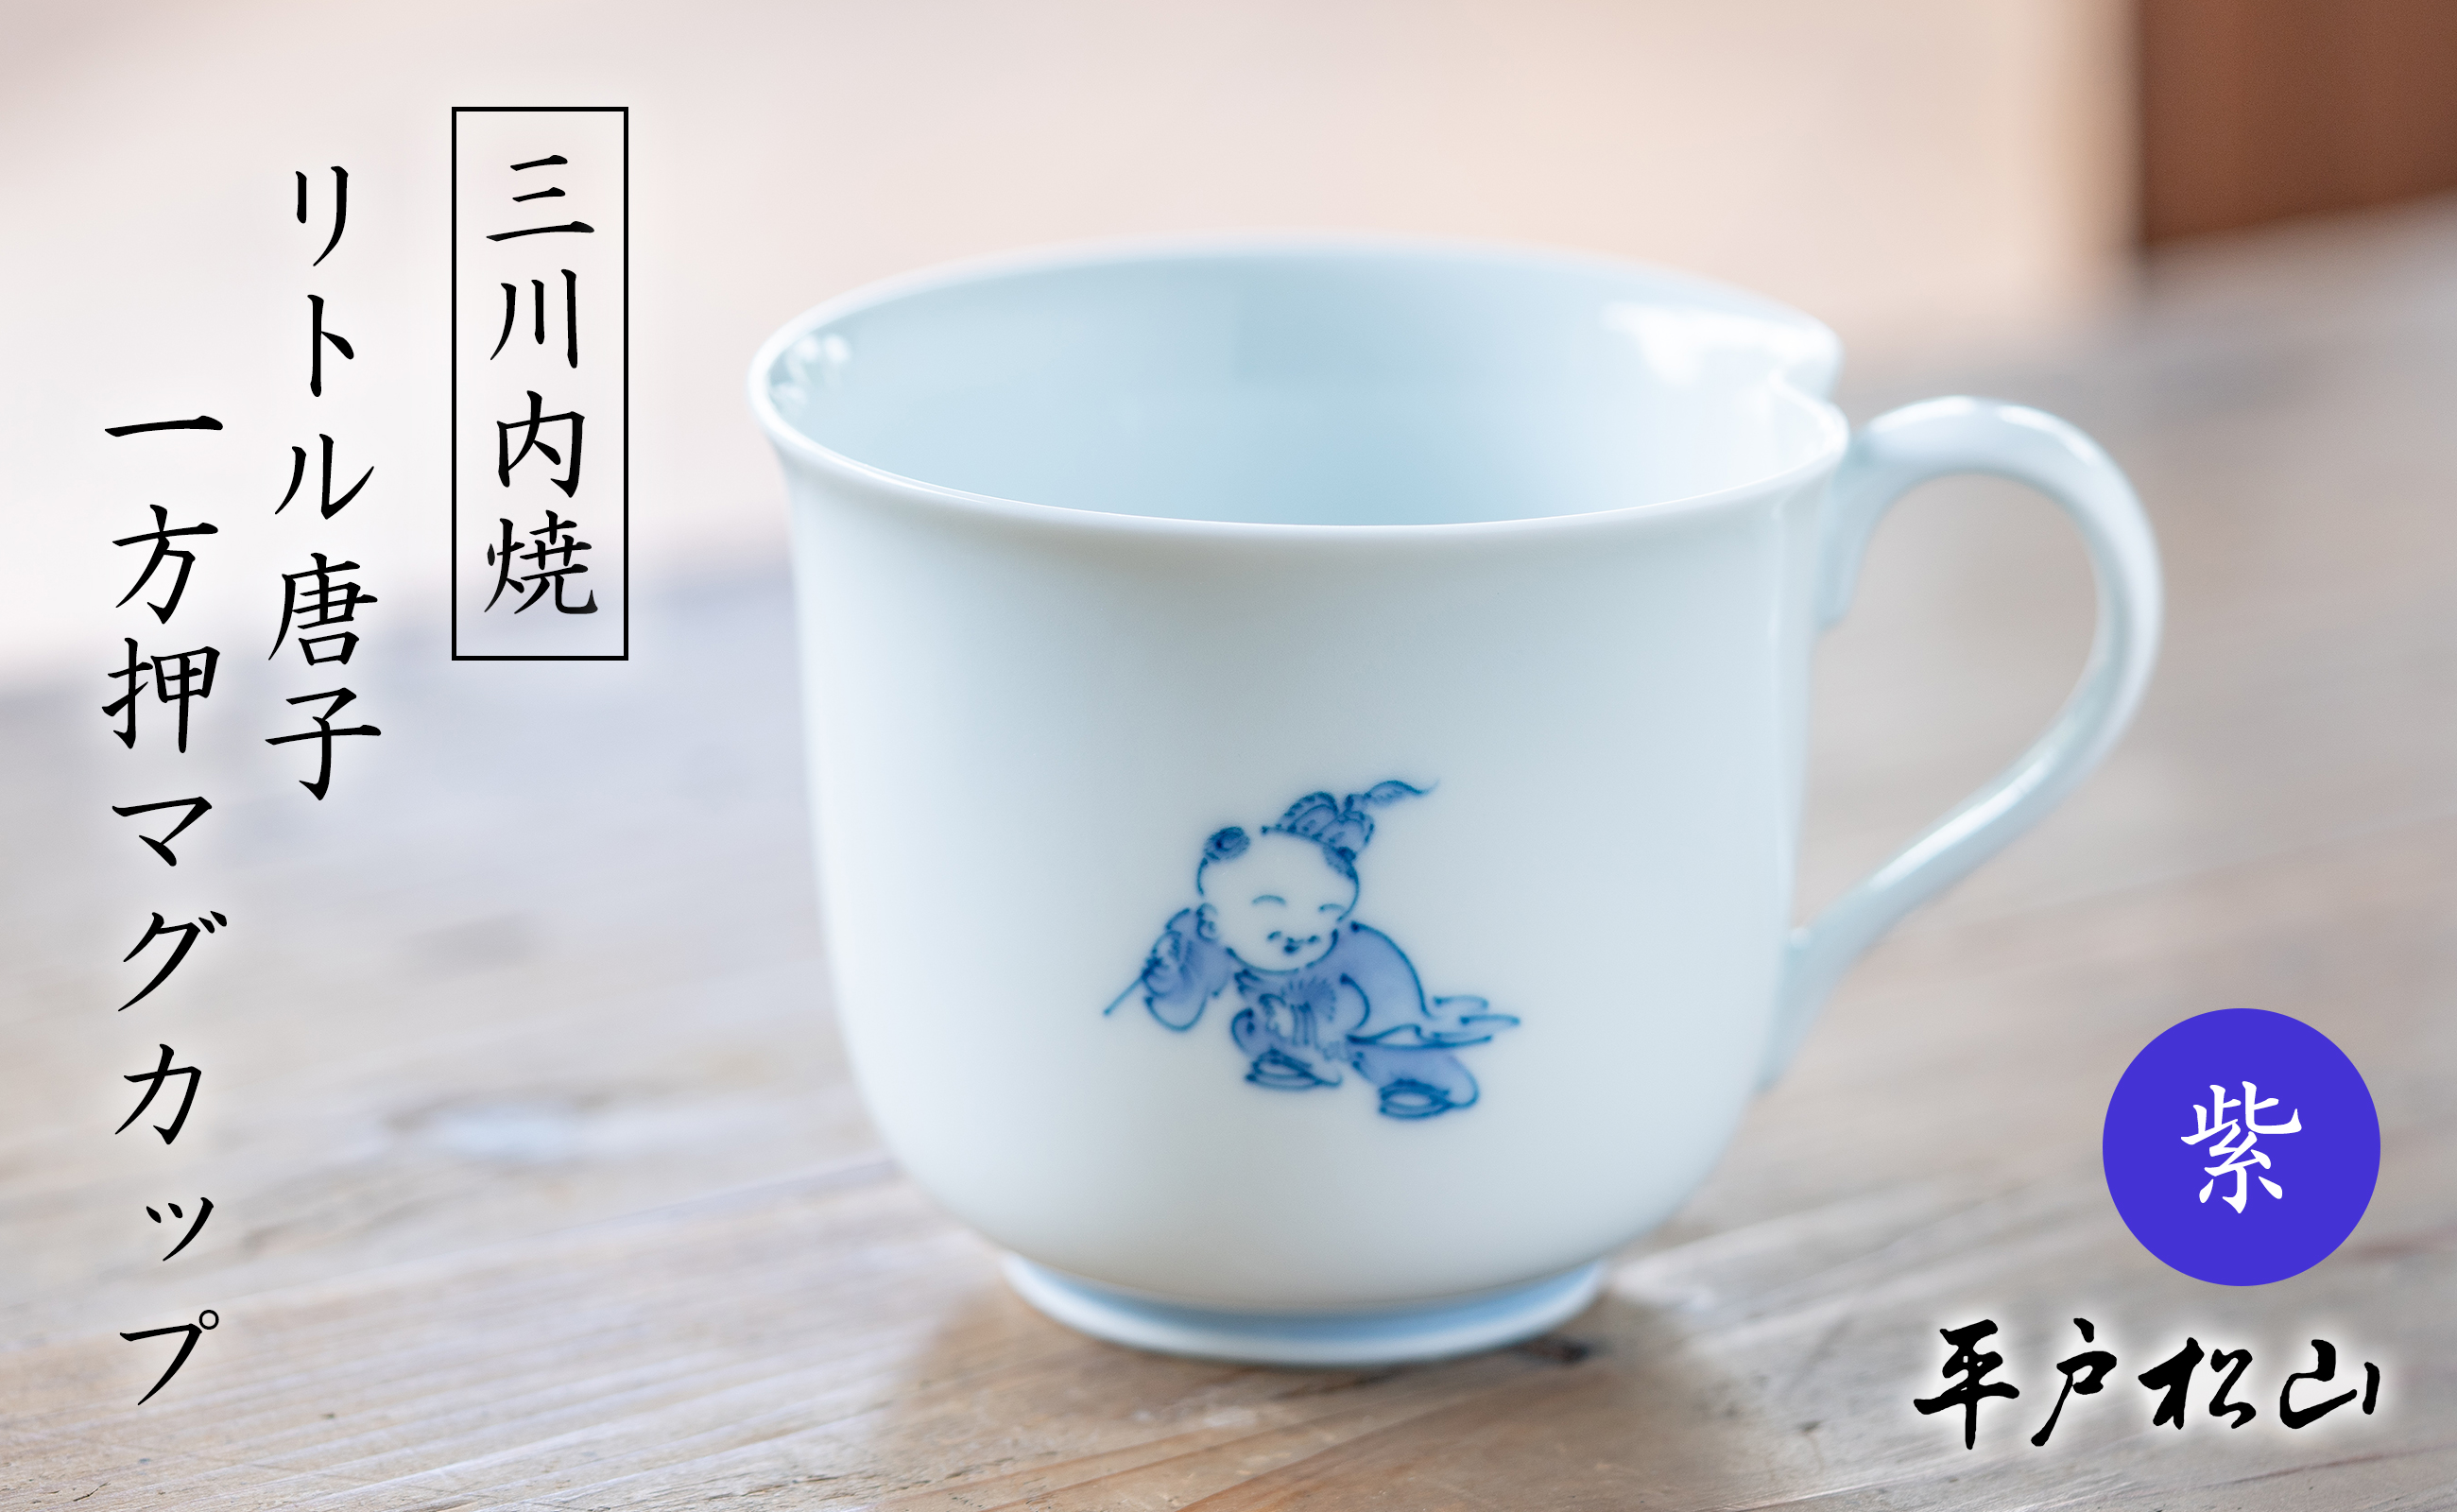 〈平戸松山窯〉一方押マグカップ (リトル唐子 紫) 1個 手描き 染付 食器 コップ コーヒーカップ 